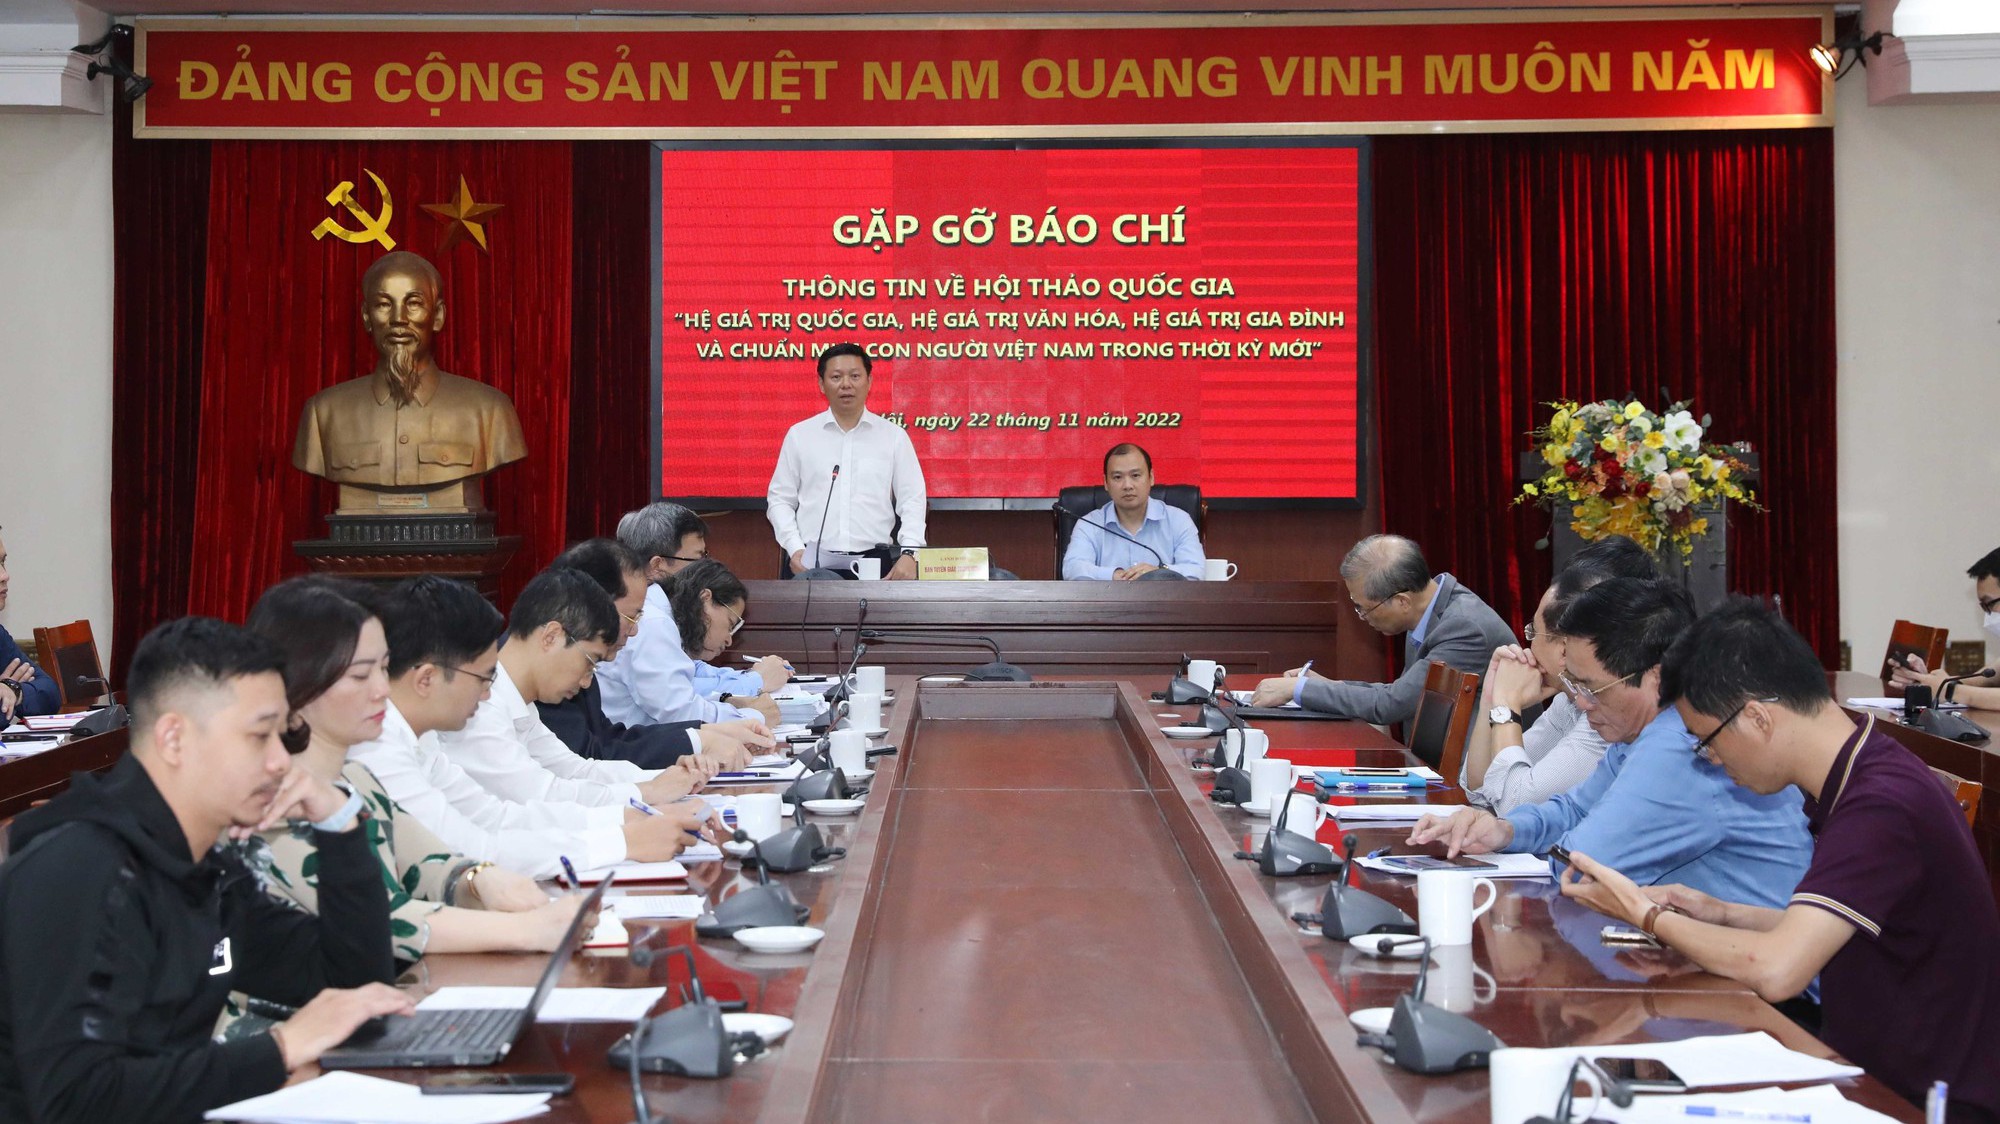 Tổ chức hội thảo quốc gia để làm rõ bốn hệ giá trị Việt Nam trong thời kỳ mới